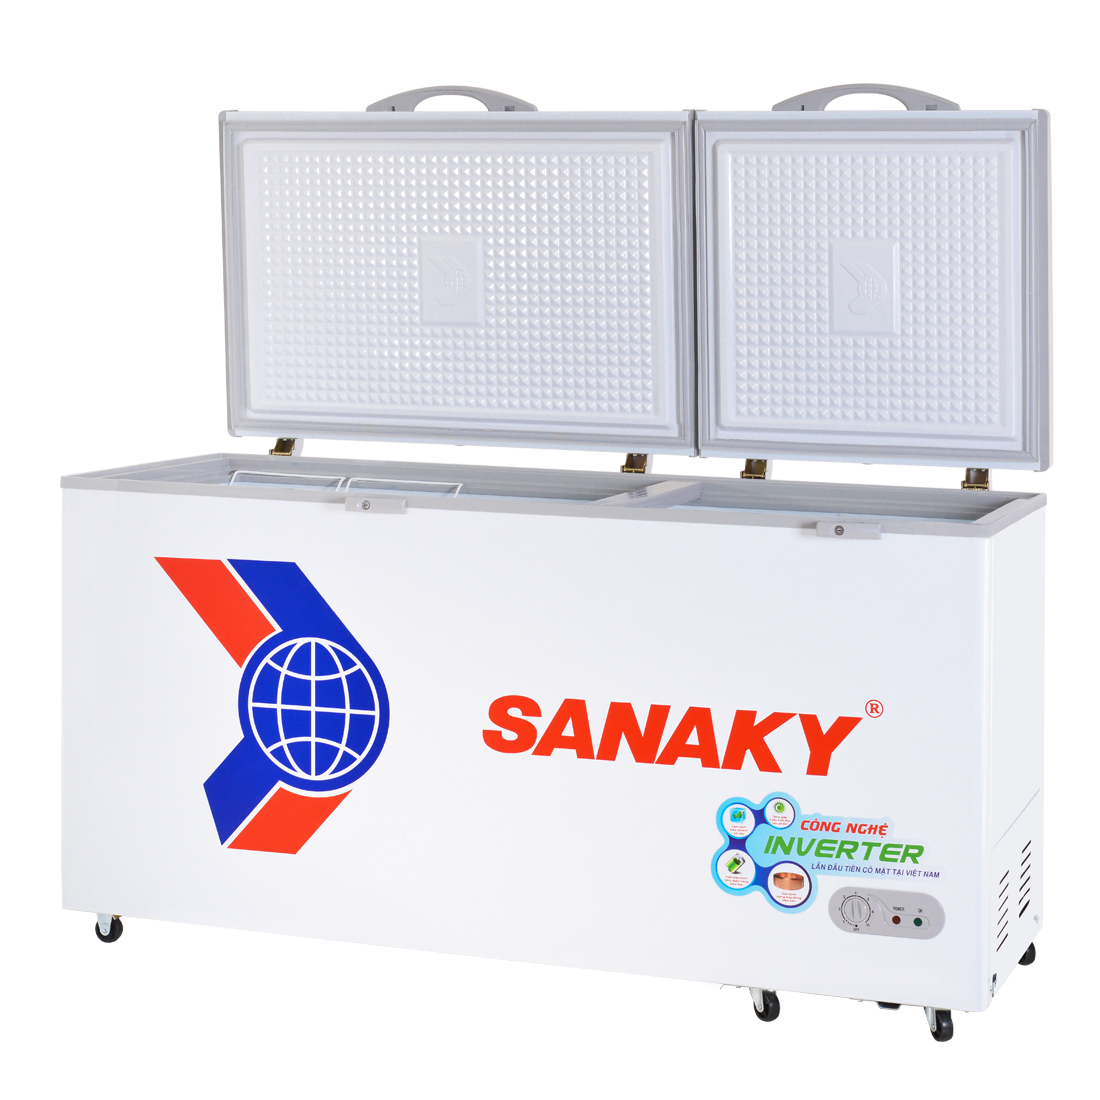 Tủ Đông Sanaky VH-6699HY3 (530L) - Hàng Chính Hãng